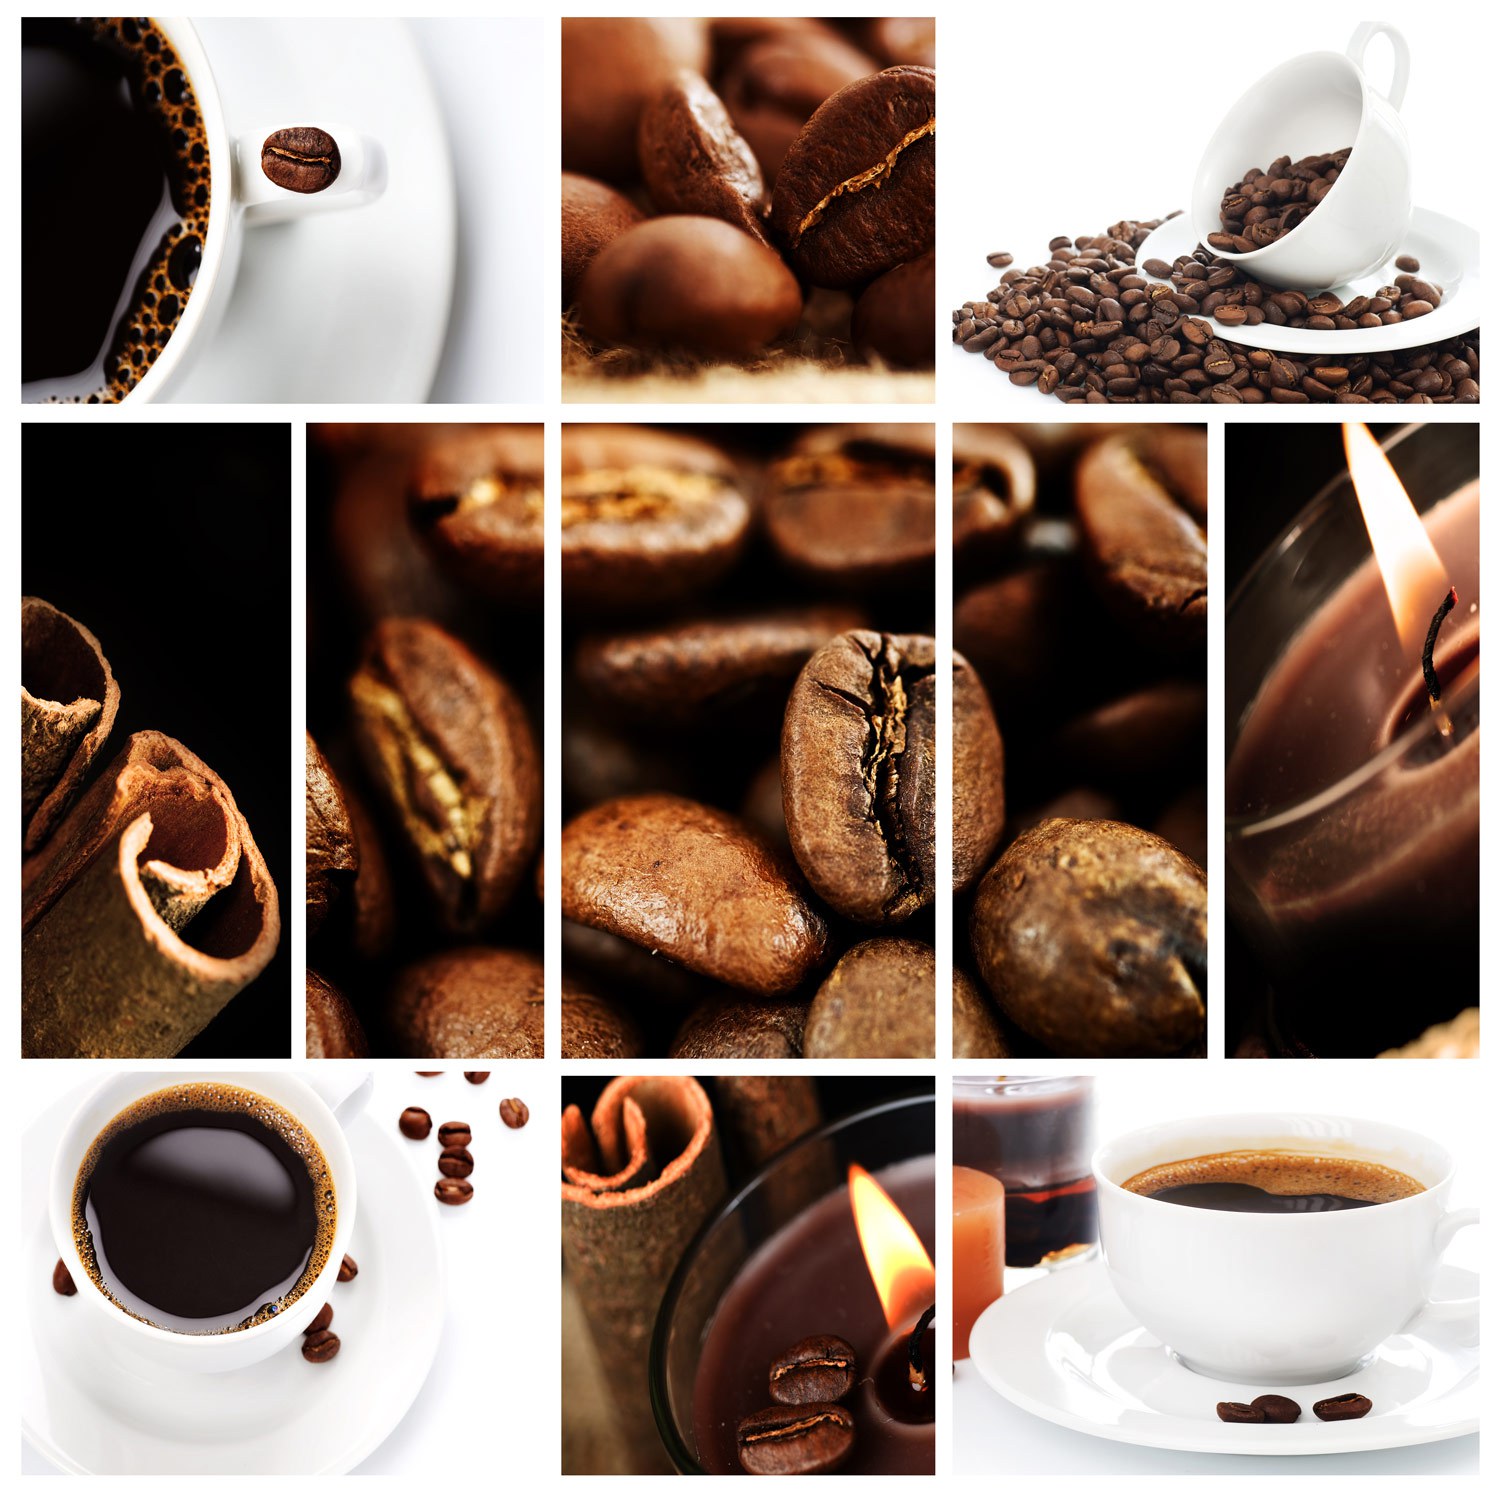 世界各地咖啡豆的详细分类及介绍-咖啡新手入门学